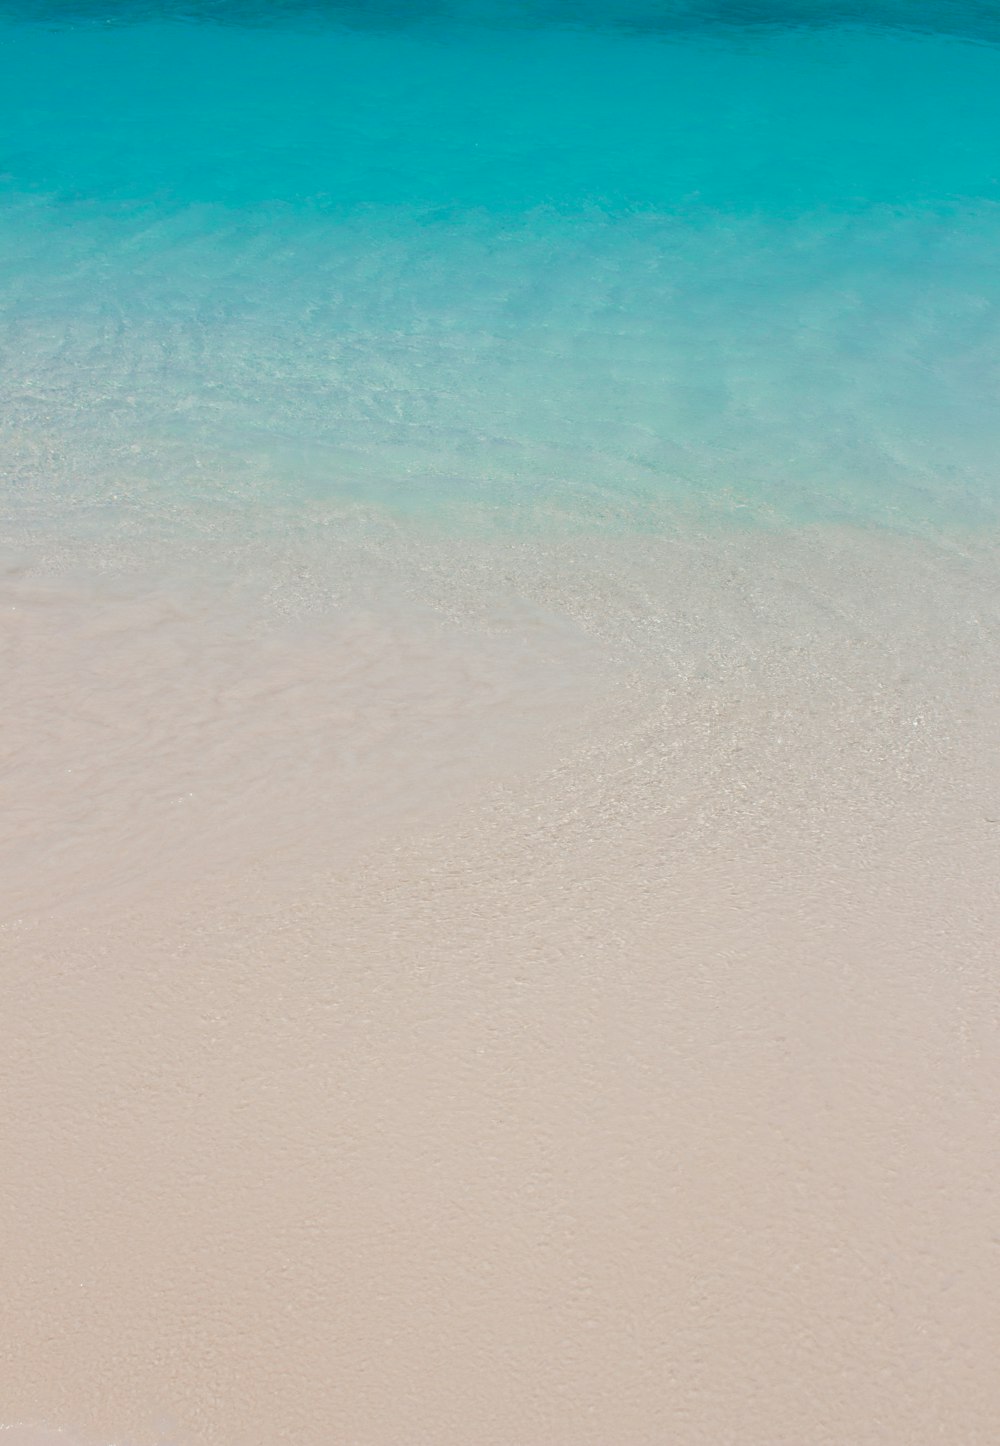 Playa de arena blanca con mar azul